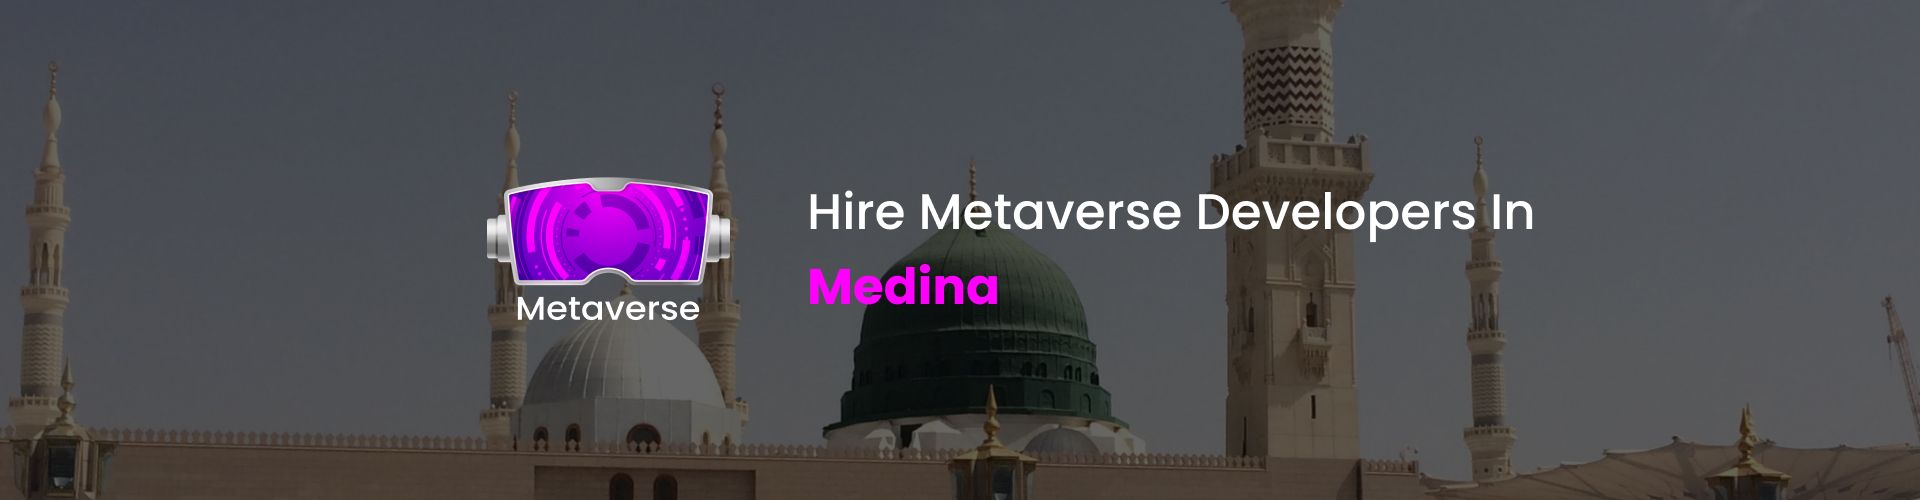 metaverse developers in medina